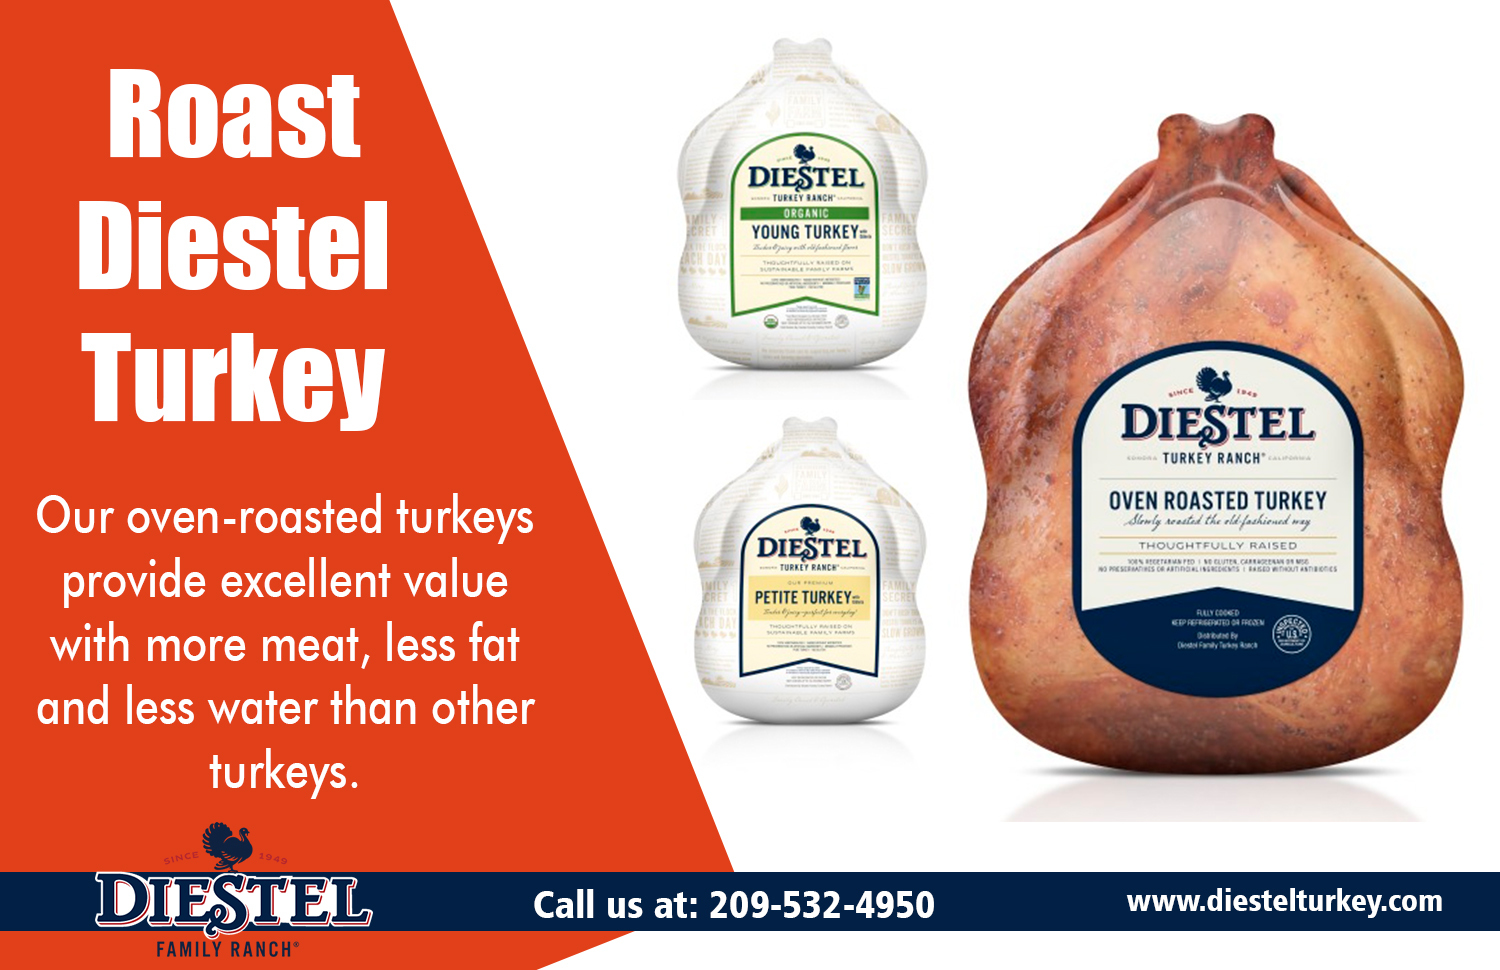 Roast Diestel Turkey